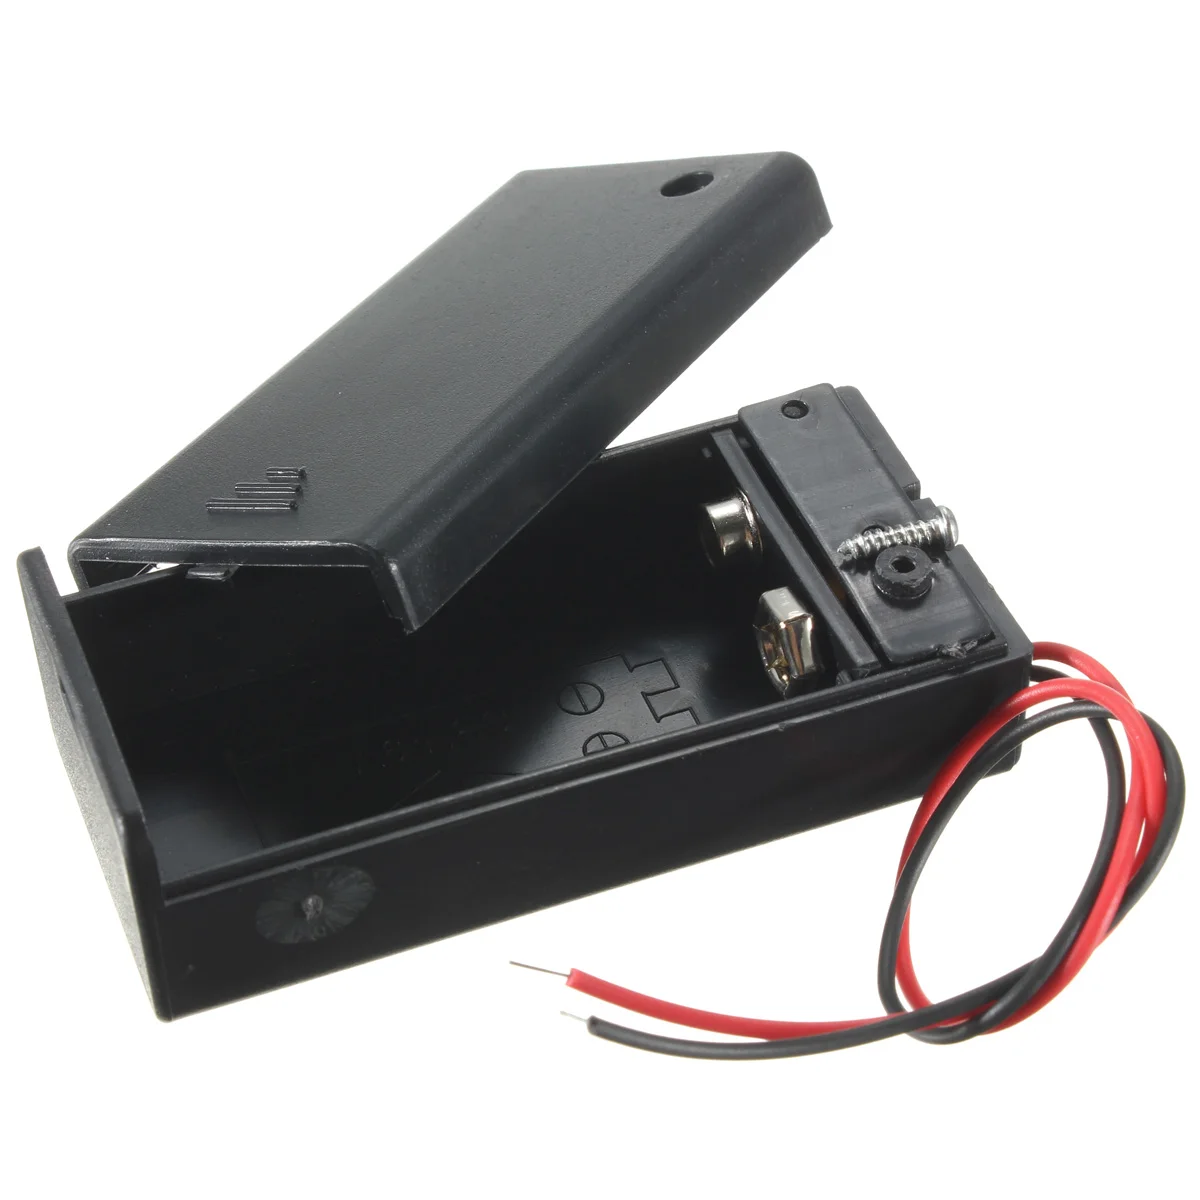 Высокое качество Универсальный ABS DIY Стандартный 9 в держатель для хранения батареи Чехол коробки со шнуром провода свинец вкл/выкл тумблер 67x33x20 мм